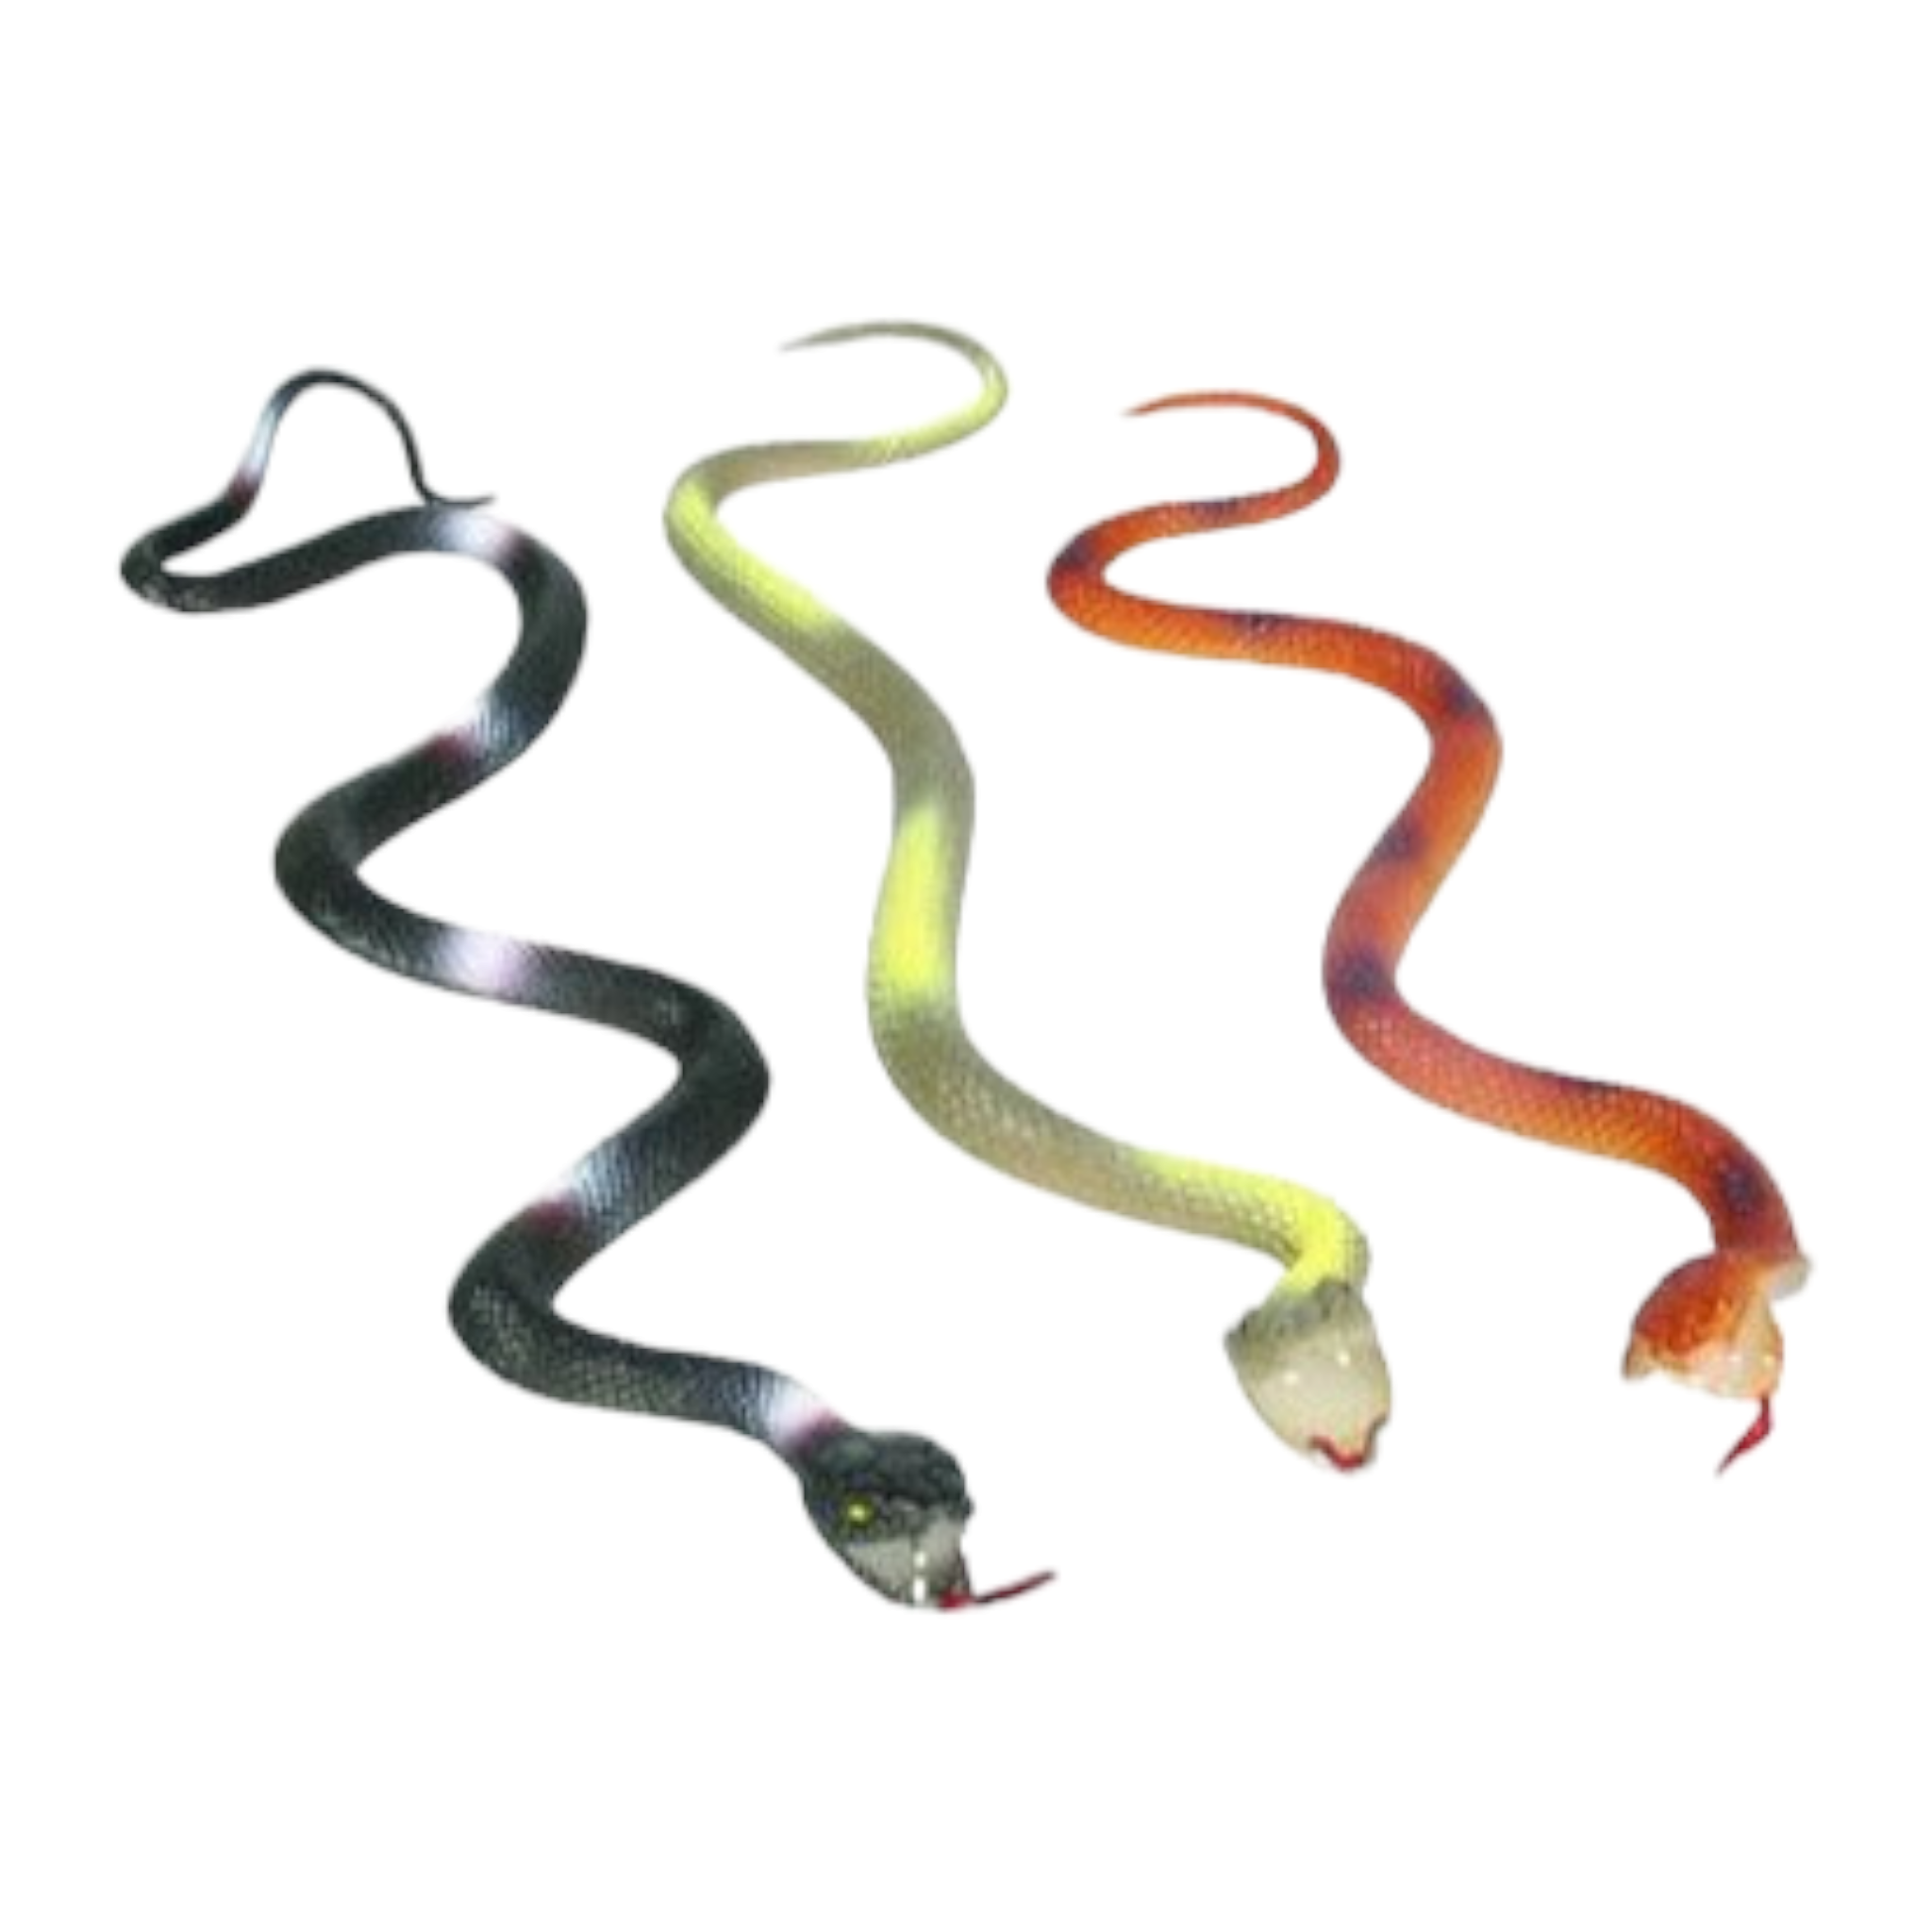 Animal PVC Toy Snake 50cm